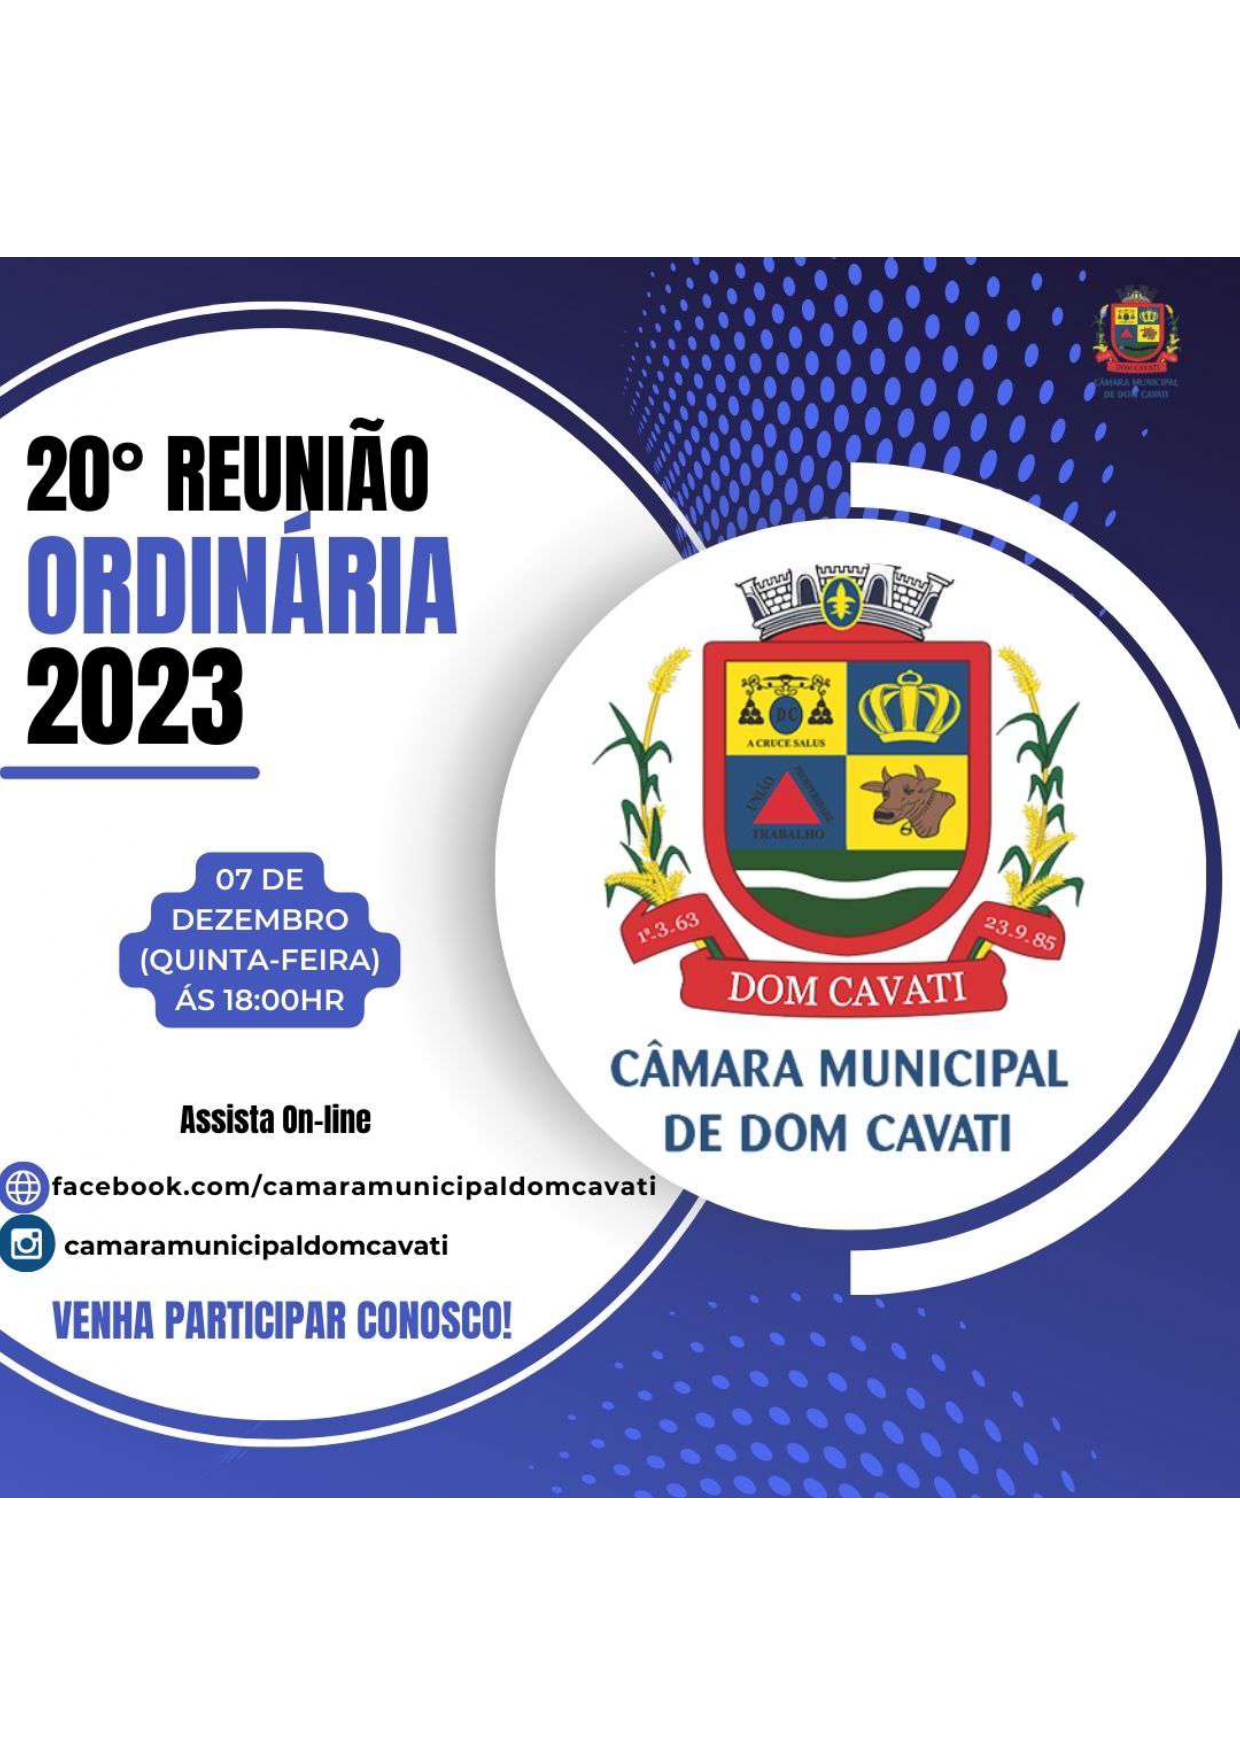 20ª Reunião Ordinária 2023